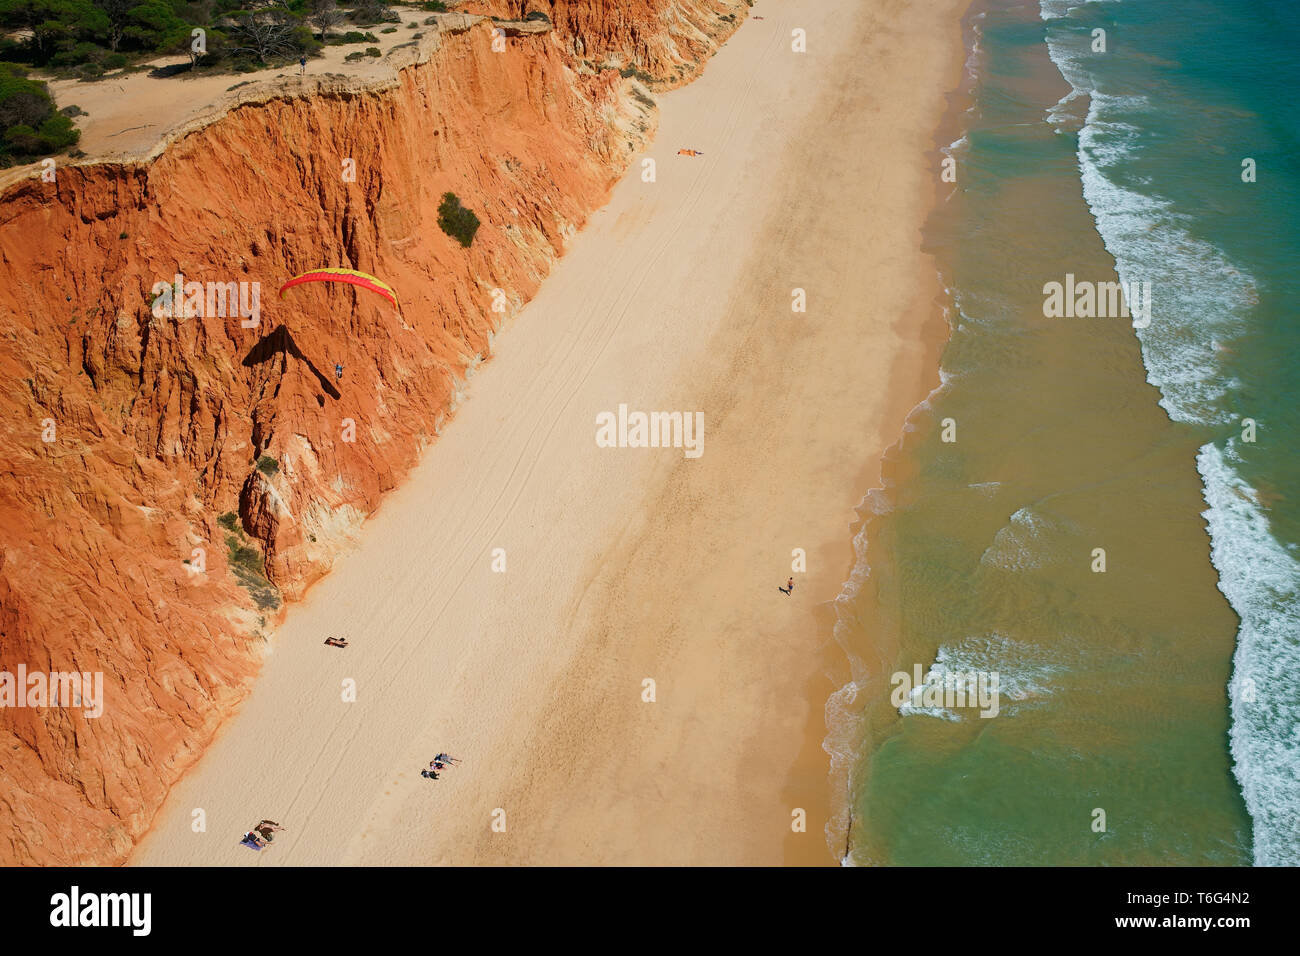 VISTA AEREA. Parapendio utilizzando la brezza marina per salire lungo una colorata scogliera sul mare. Praia da Falésia, Albufeira, Algarve, Portogallo. Foto Stock